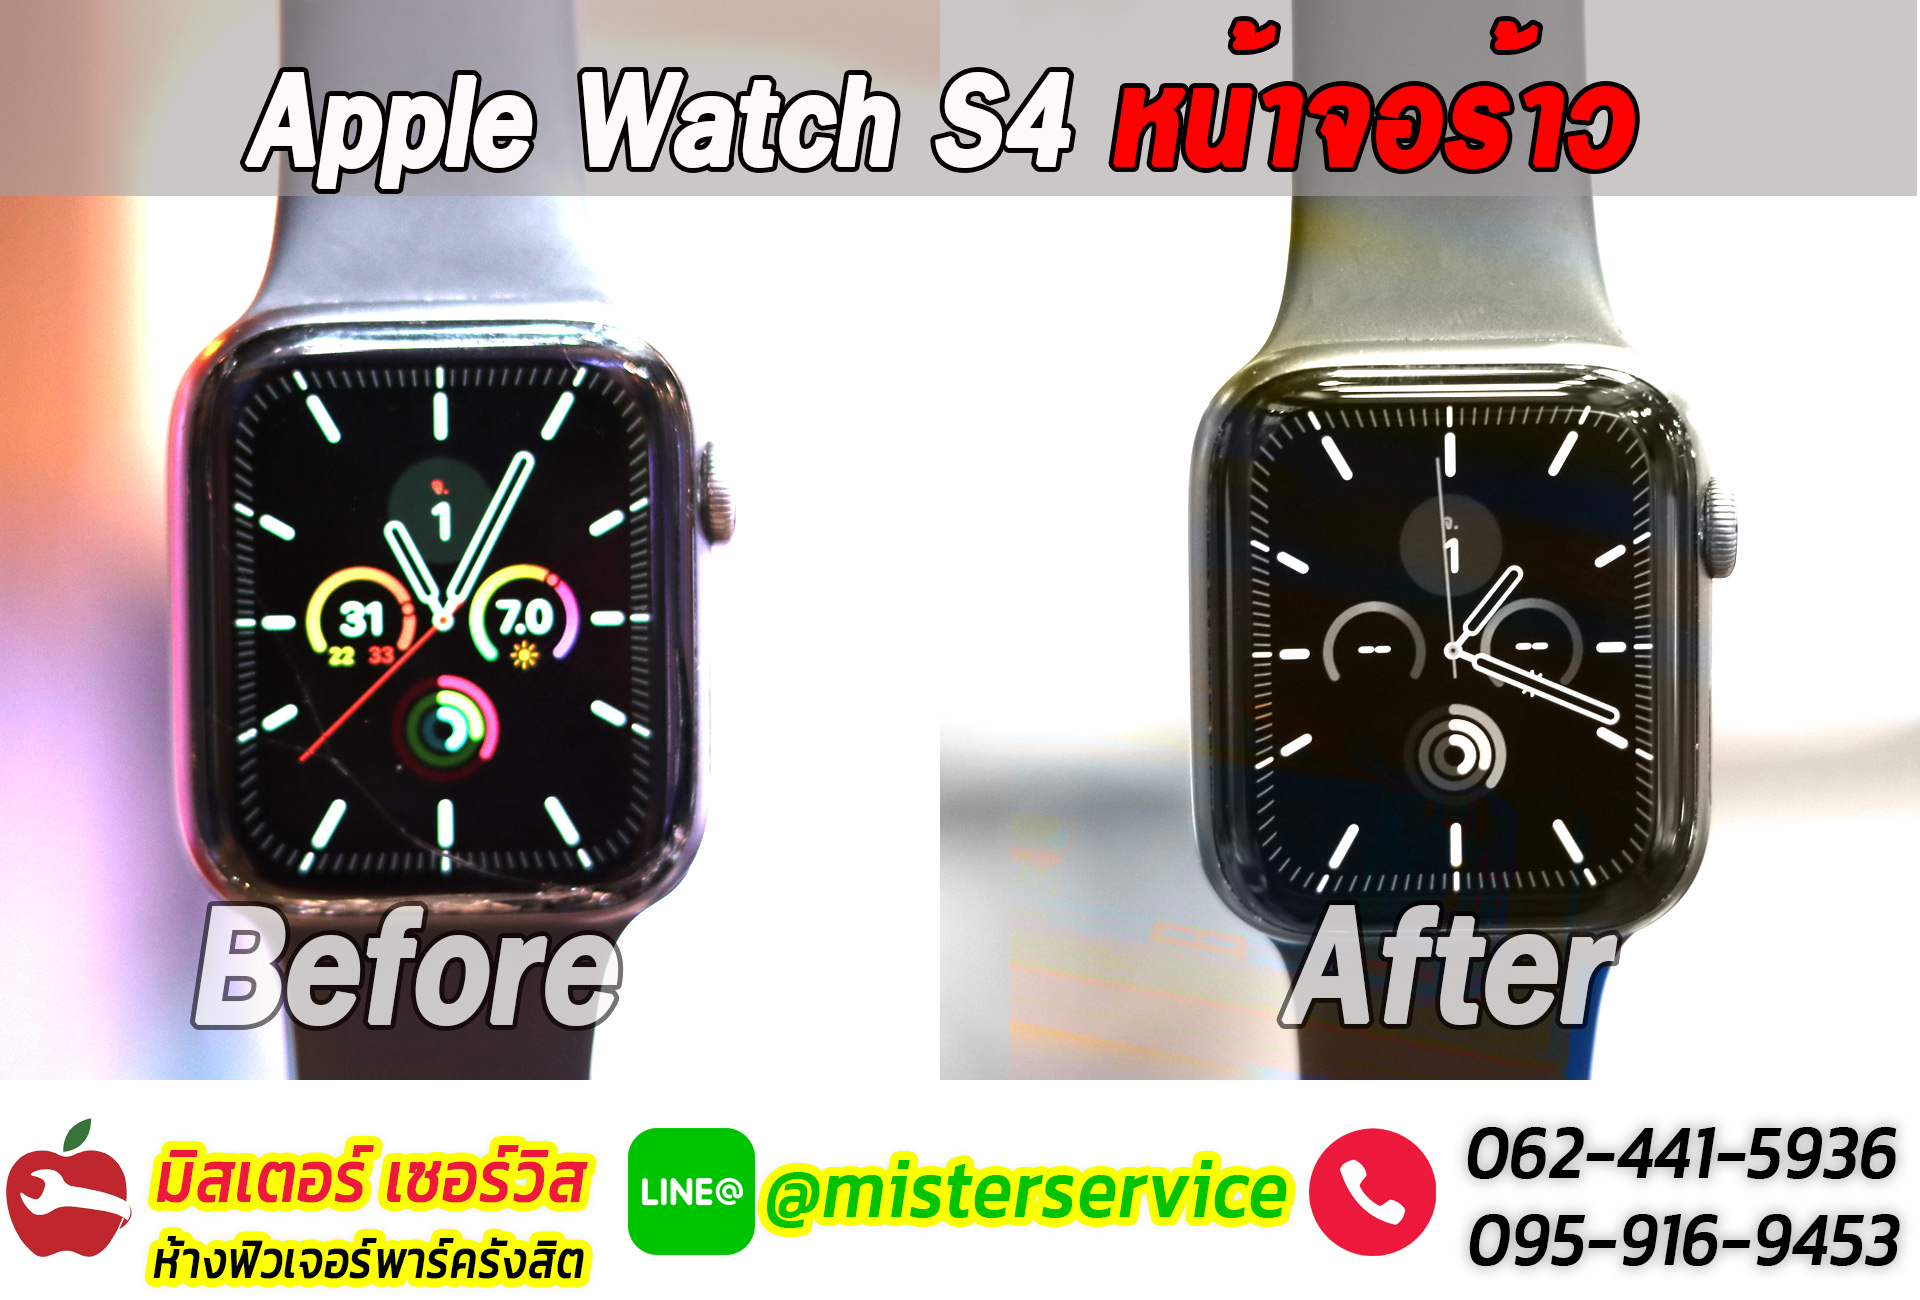 รับซ่อม Apple Watch ยโสธร อำนาจเจริญ มุกดาหาร ทั่วประเทศ